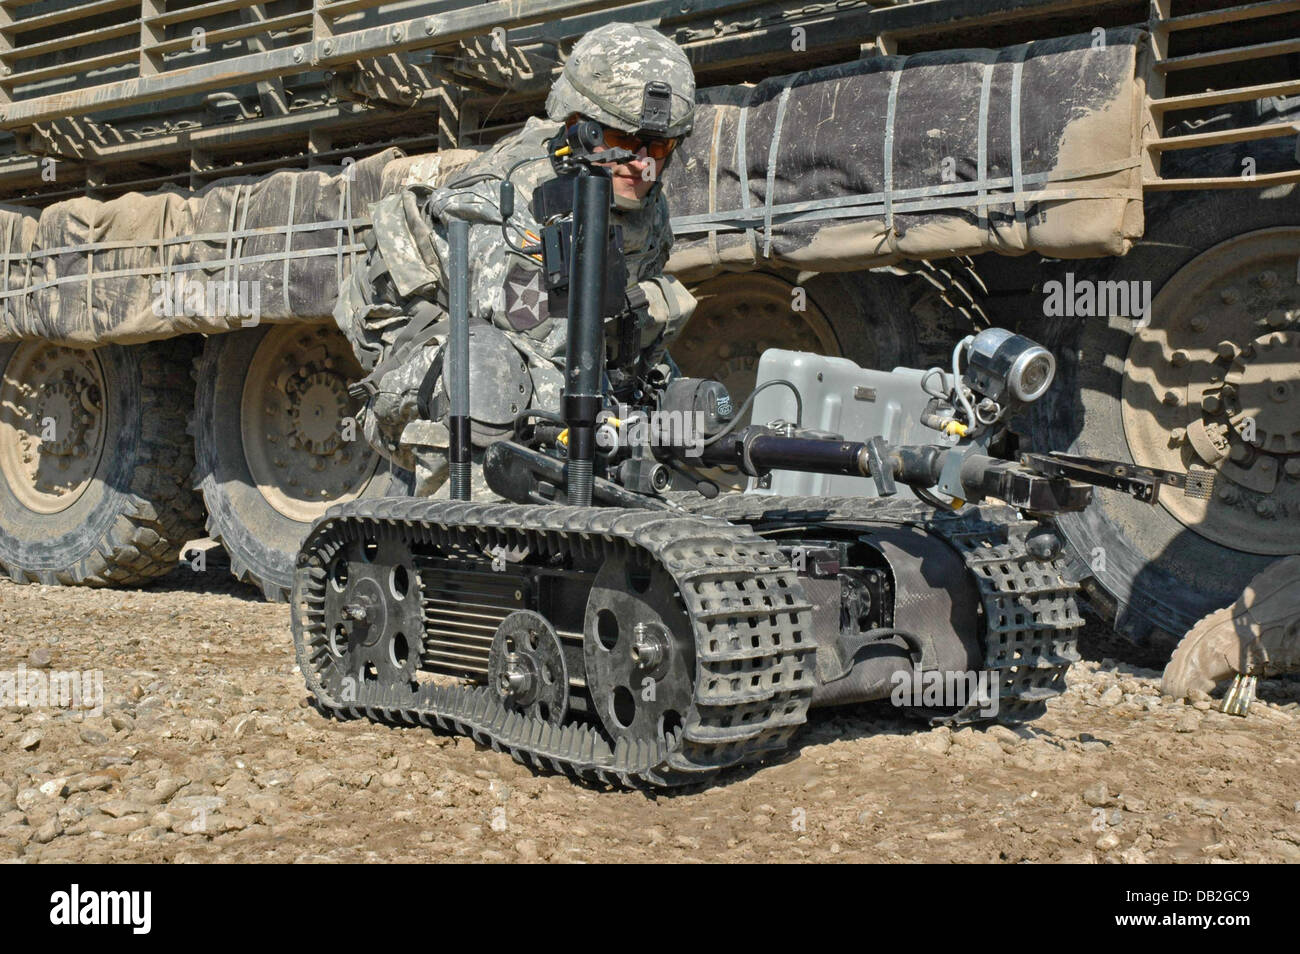 Ein Soldat der AM1133 Stryker Engineer Squad Fahrzeug der US 3rd Stryker Brigade Combat Team bereitet ein Talon EOD Roboter für eine Operation in Bagdad, Irak, März 2007. Der remote gesteuerten Explosive Ordnance Entsorgung Roboter wird verwendet, um potenzielle improvisierten Sprengkörpern (IED) zu untersuchen. Foto: Carl Schulze Stockfoto